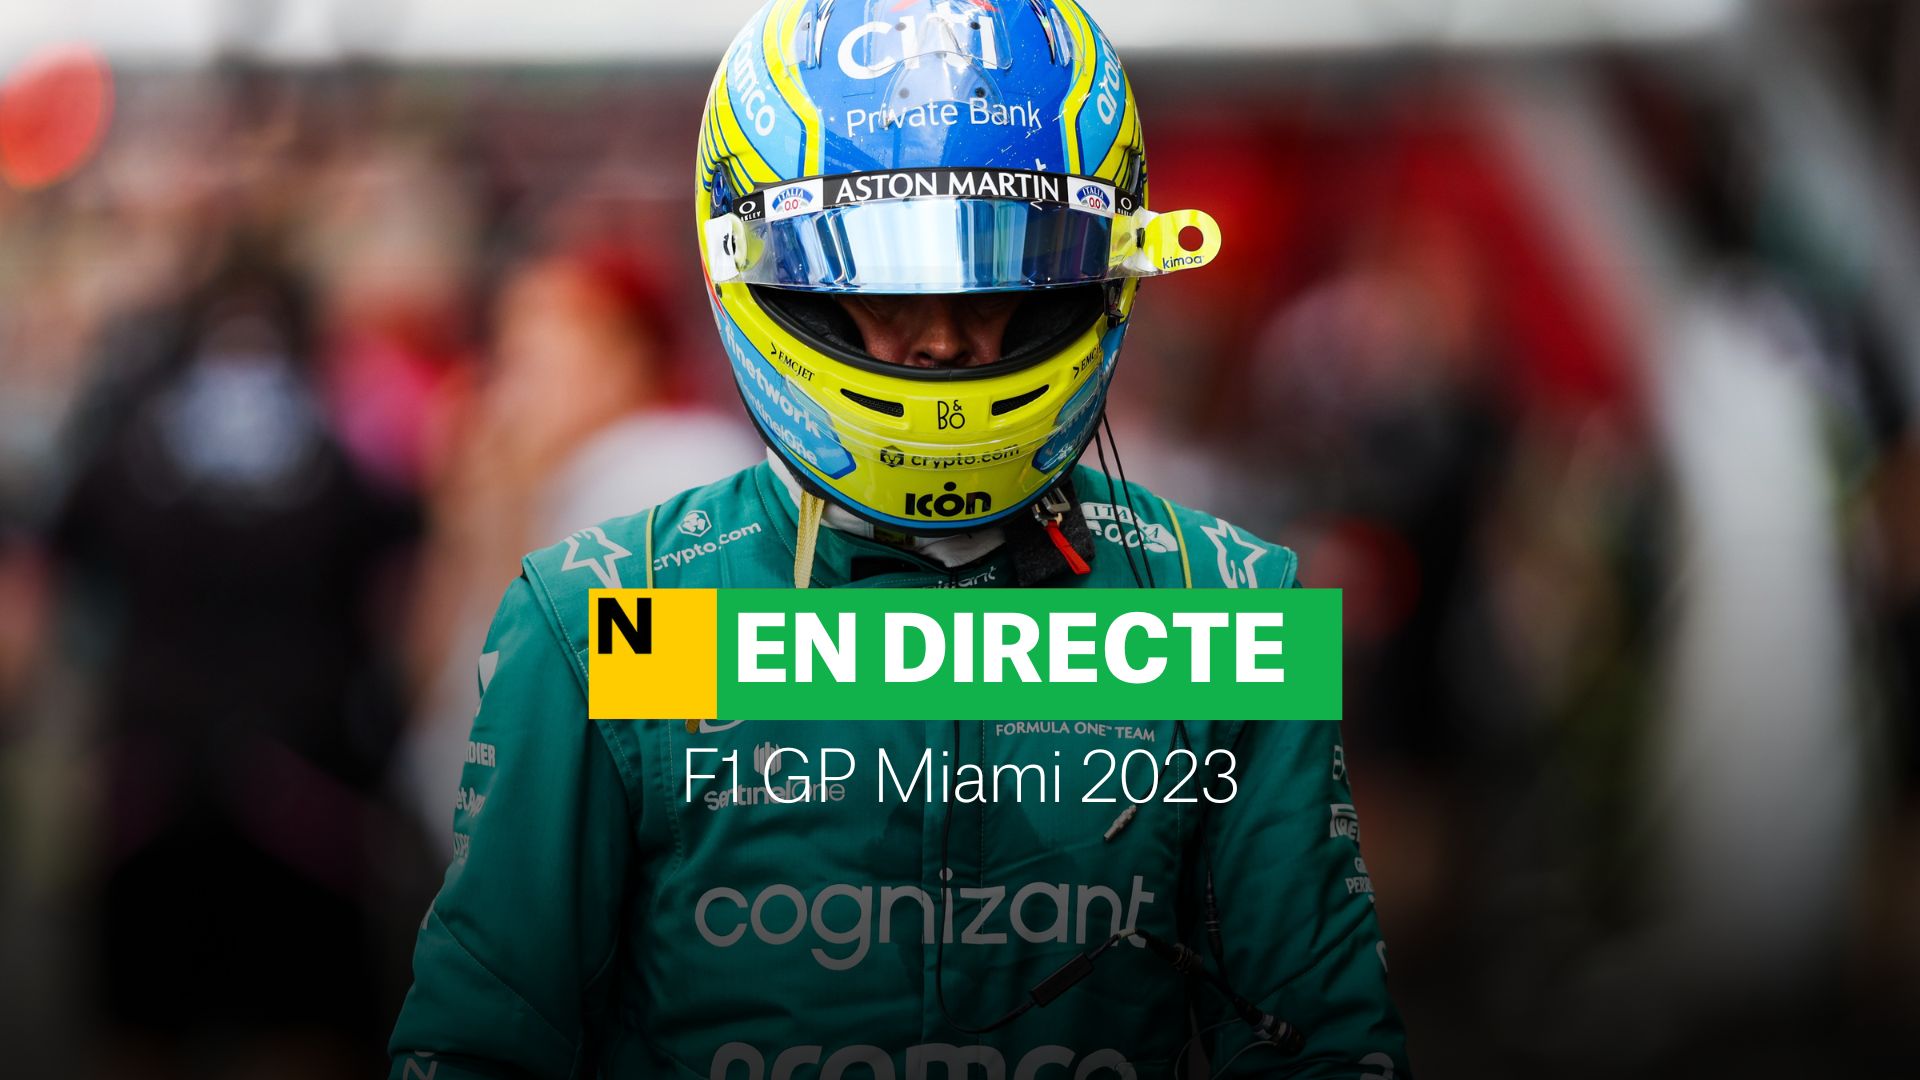 F1 GP de Miami 2023, DIRECTE | Fernando Alonso torna al podi!